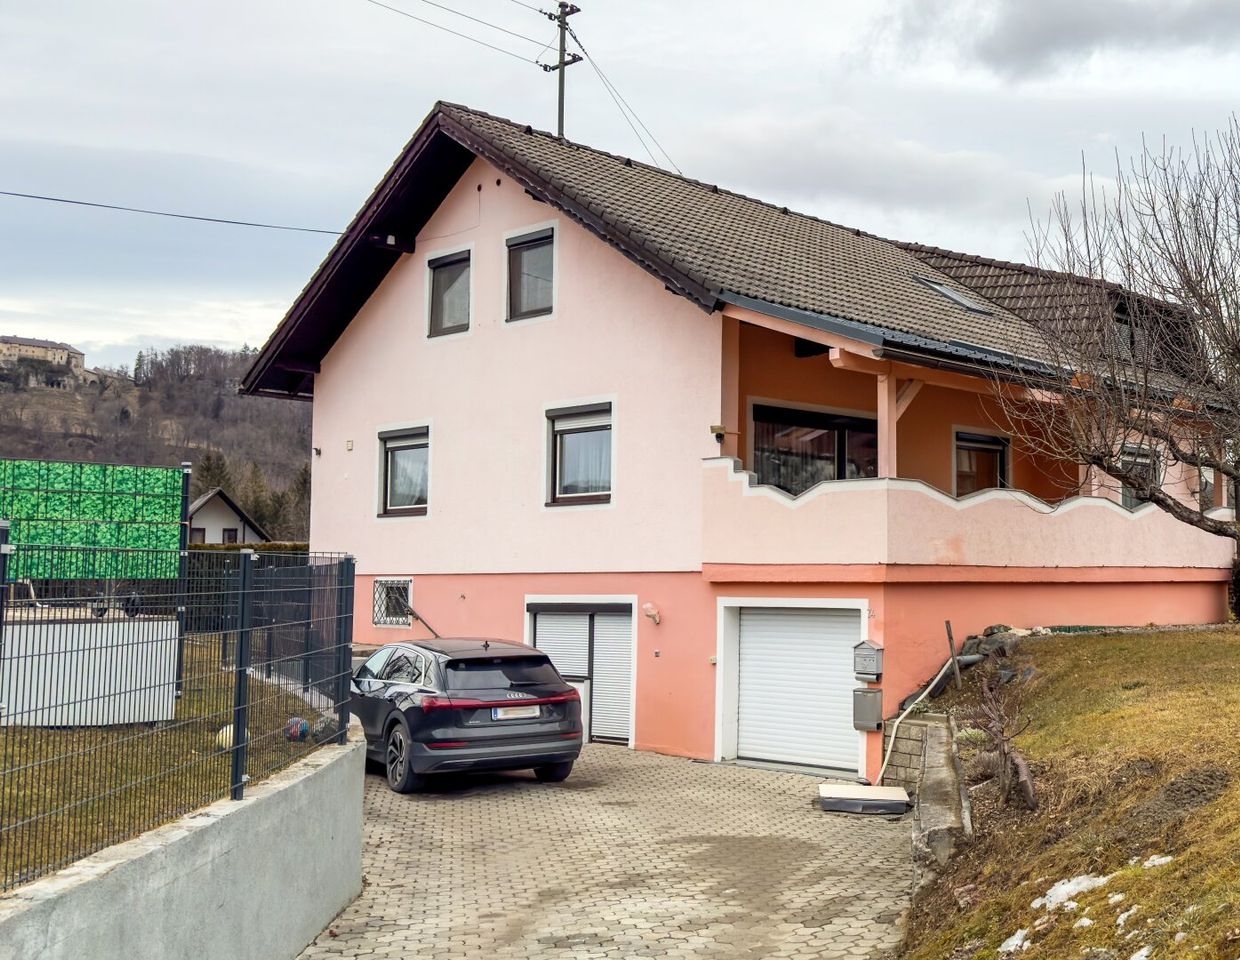 Traumhaftes Einfamilienhaus in Ferlach! - 8 Zimmer, 210m², Garten & Doppelgarage